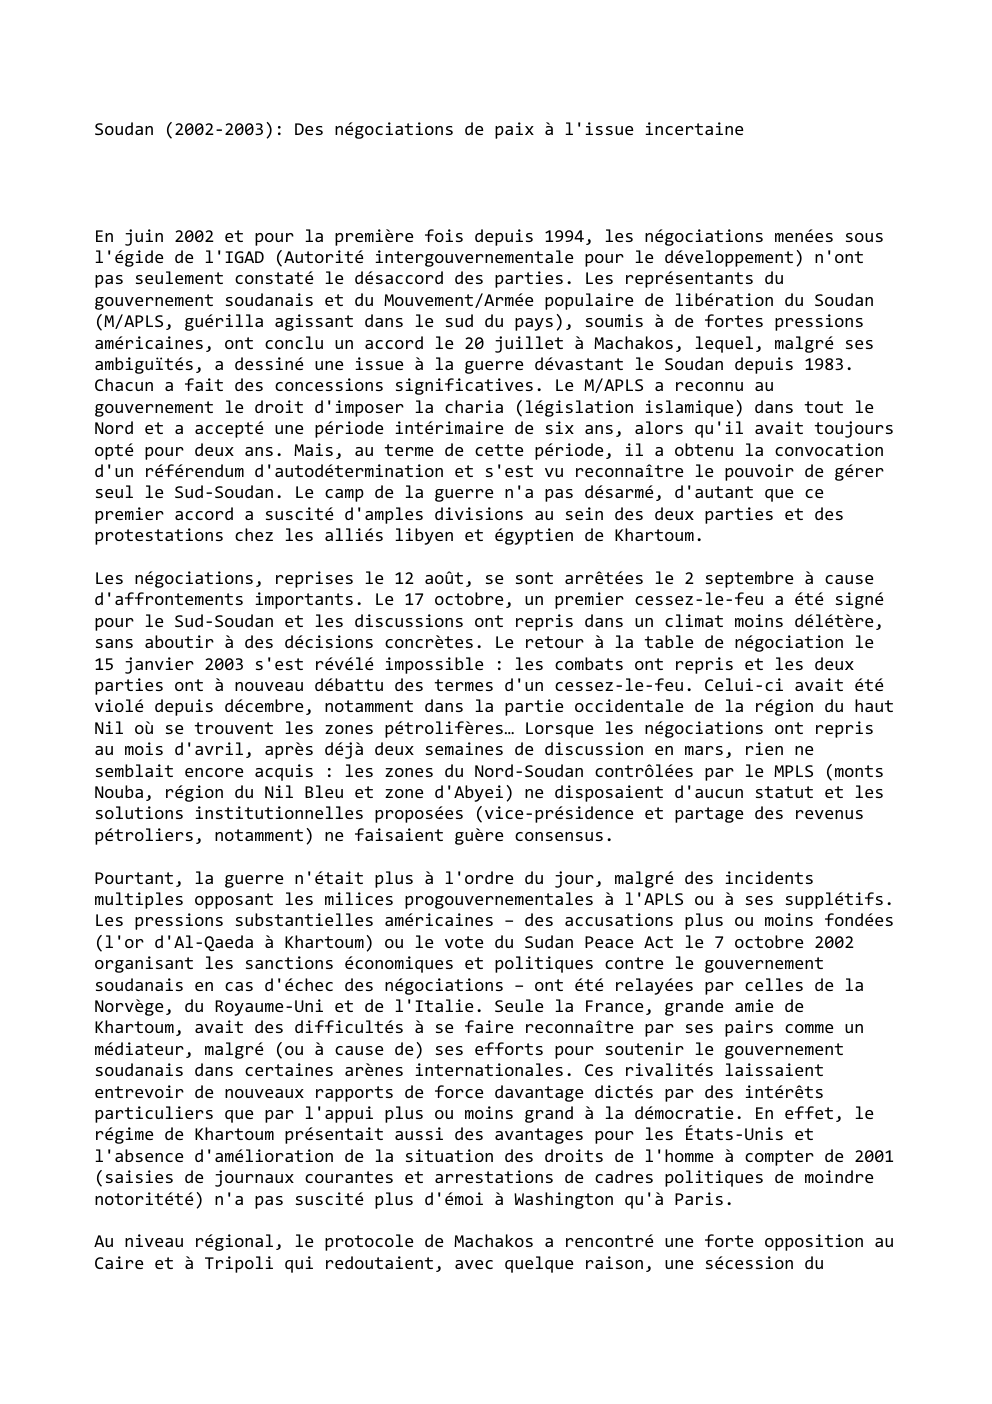 Prévisualisation du document Soudan (2002-2003): Des négociations de paix à l'issue incertaine

En juin 2002 et pour la première fois depuis 1994, les...